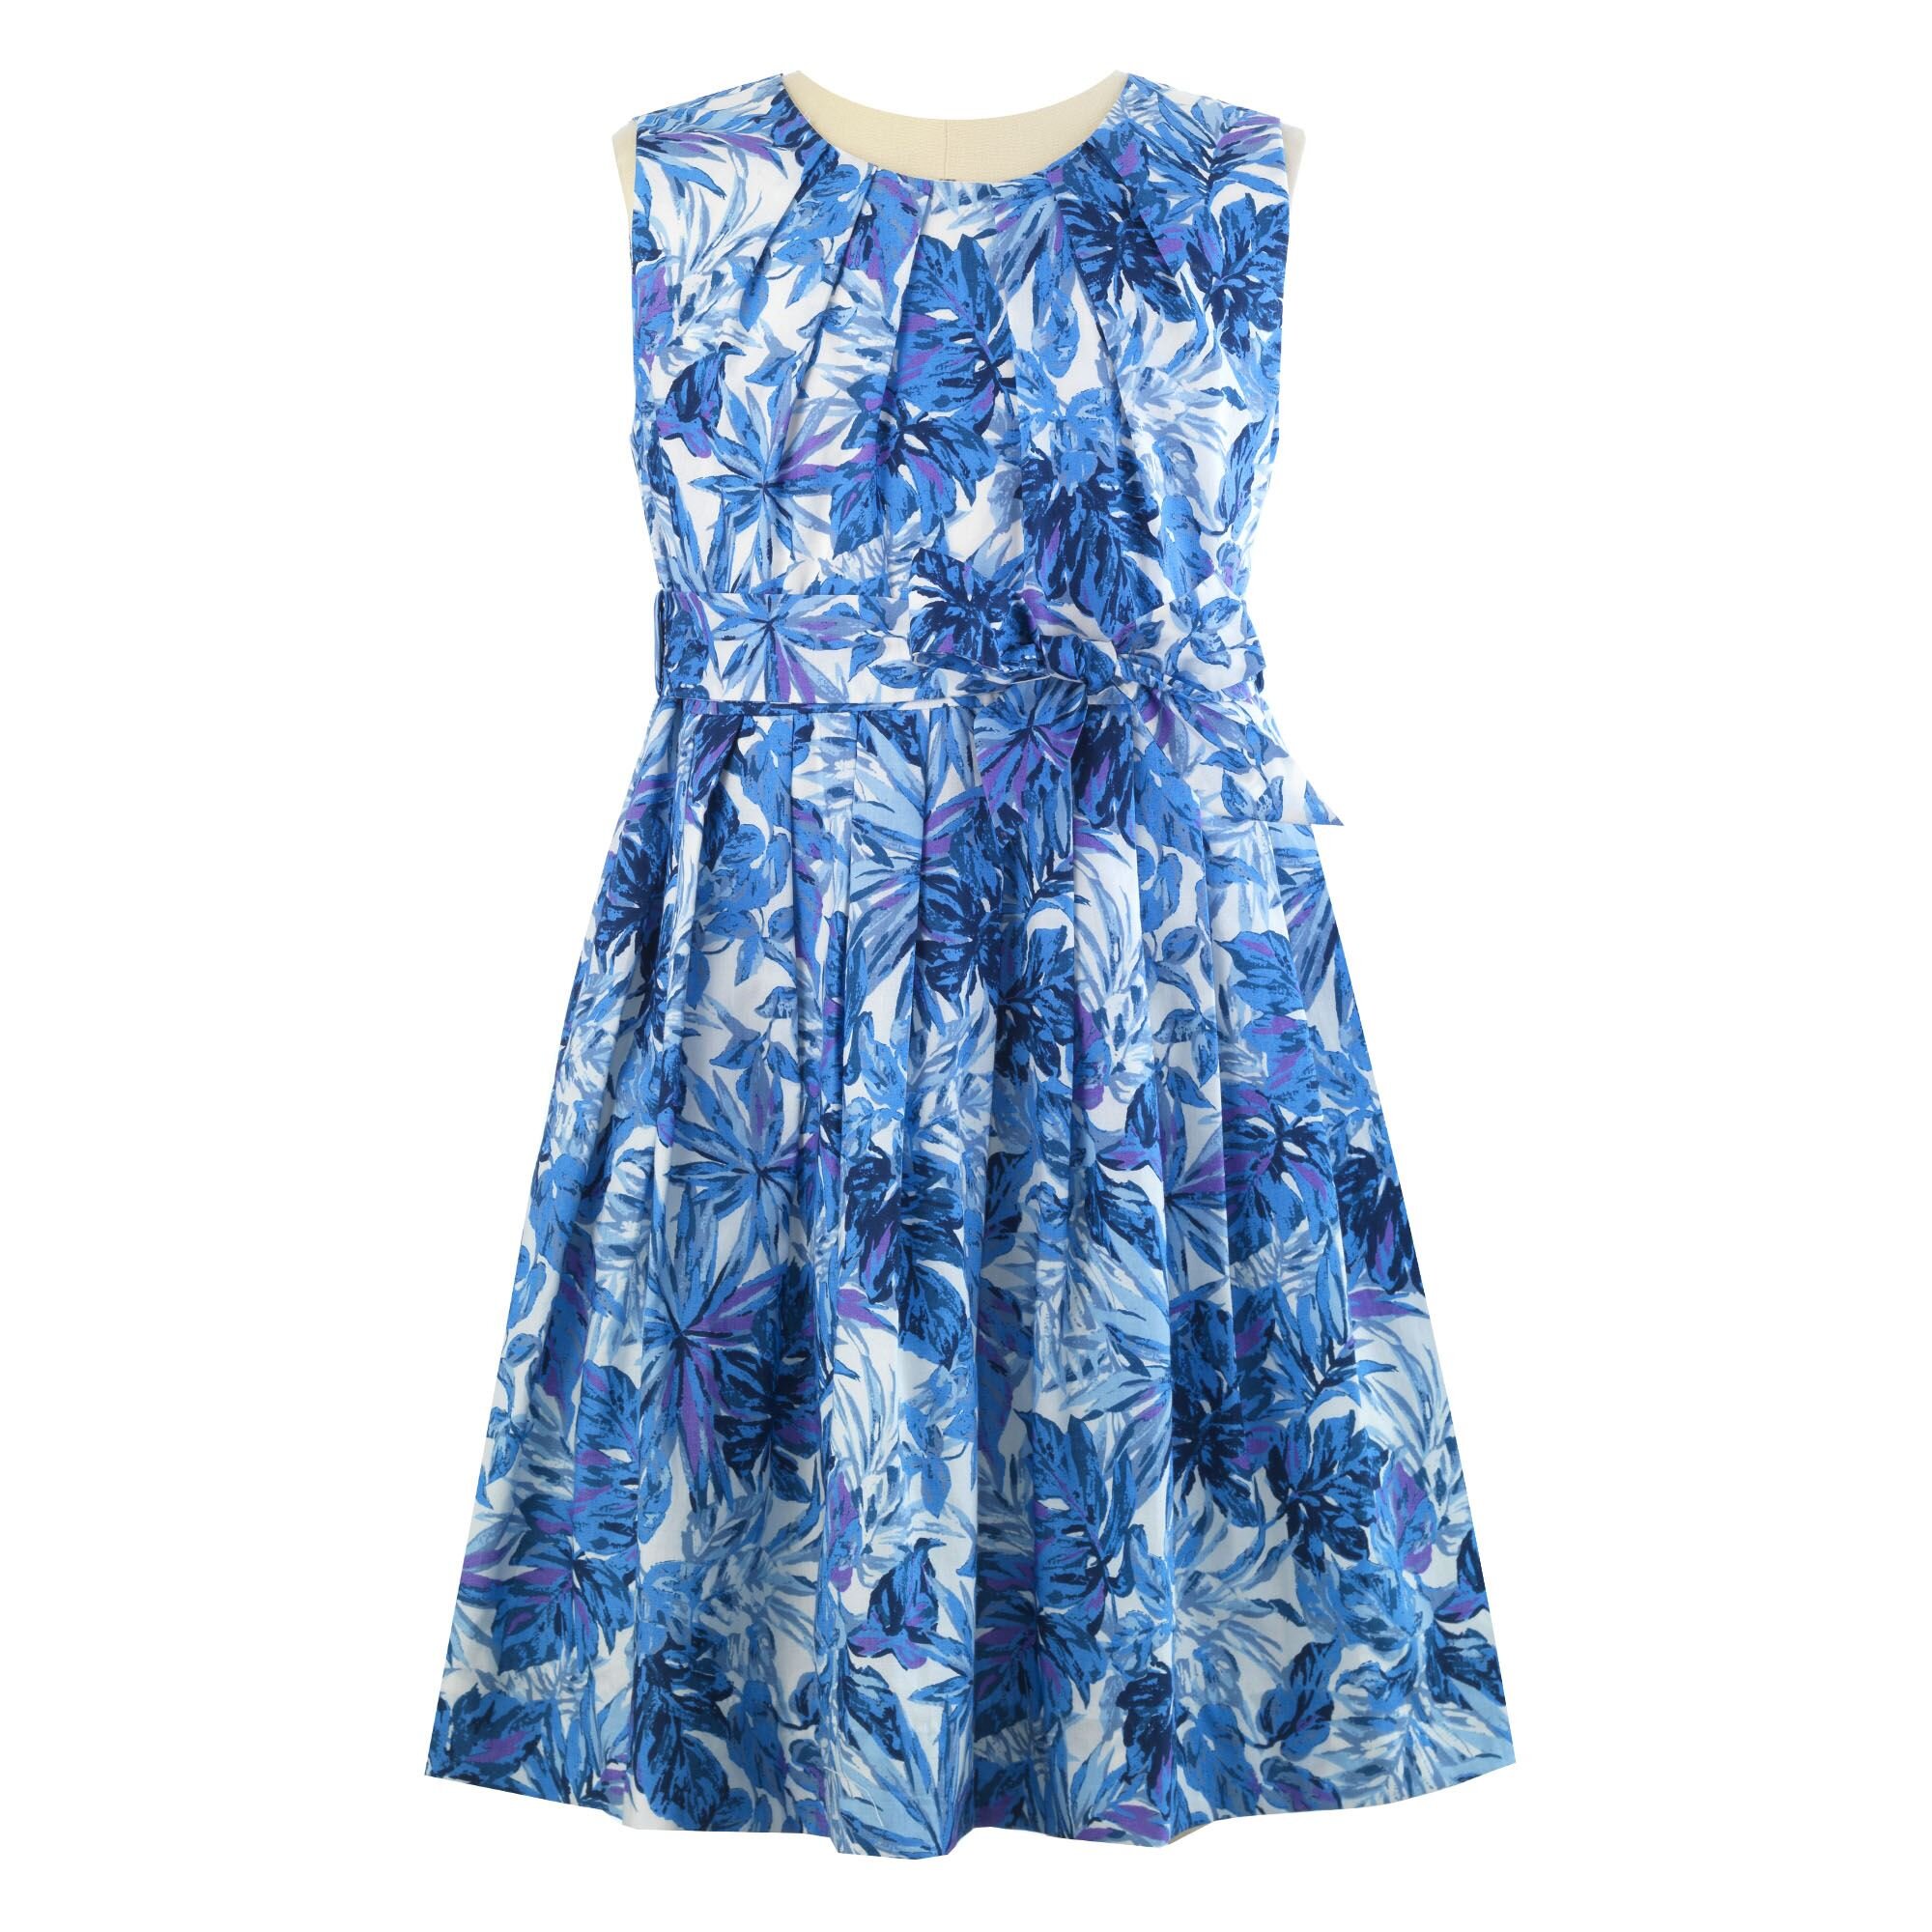 Rachel Riley Palm Pleated Dress in Blue.jpg